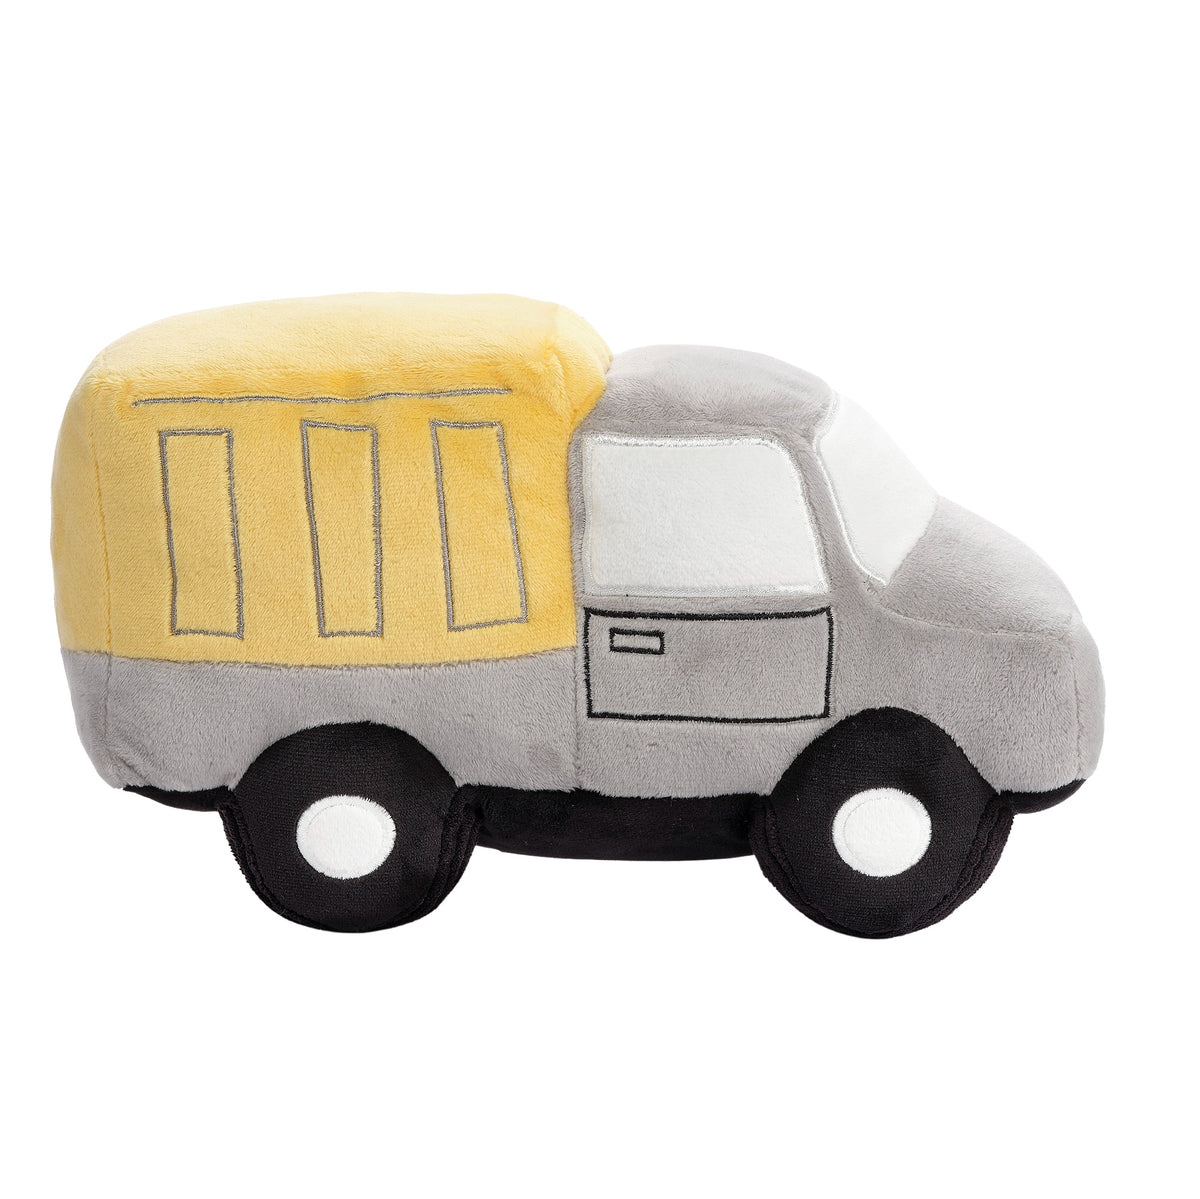 Construction Truck Decorative Pillow, Construction Theme Plush Toy